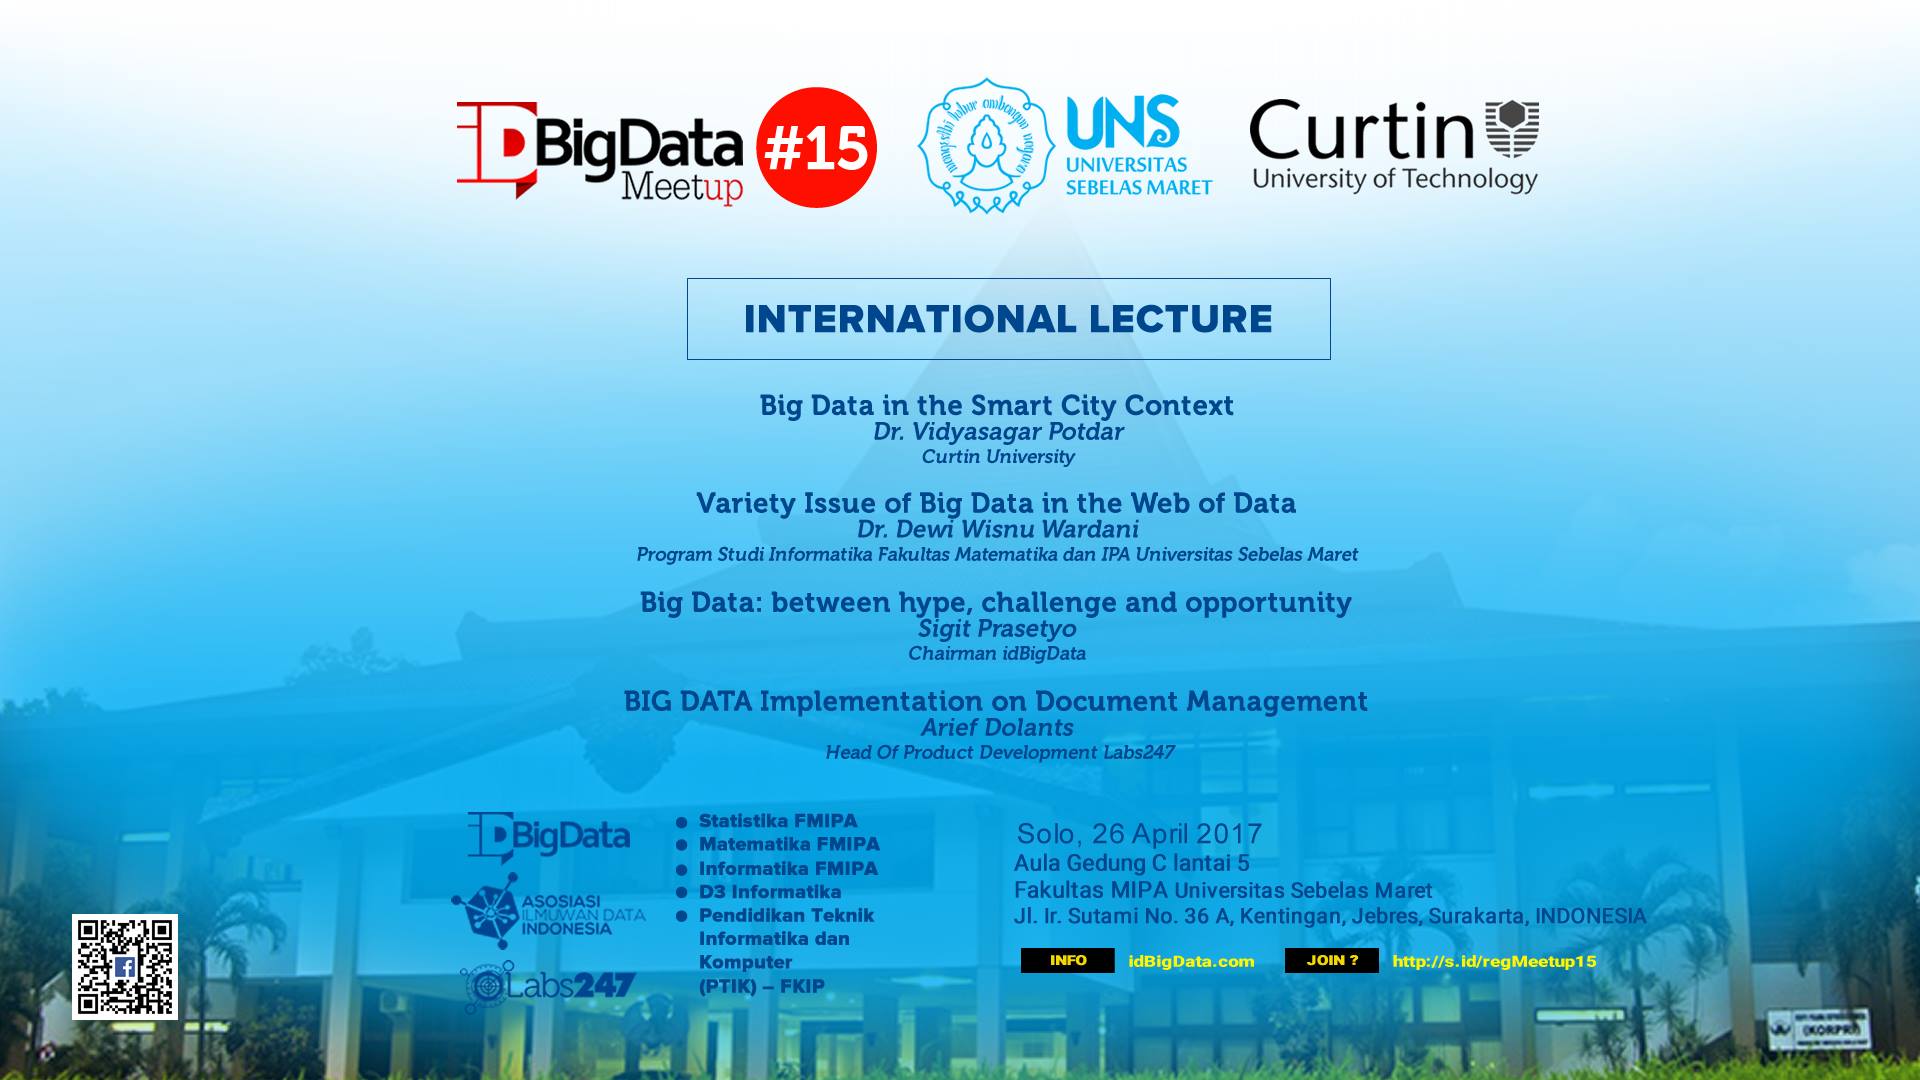 MeetUp#15 idBigData - Big Data